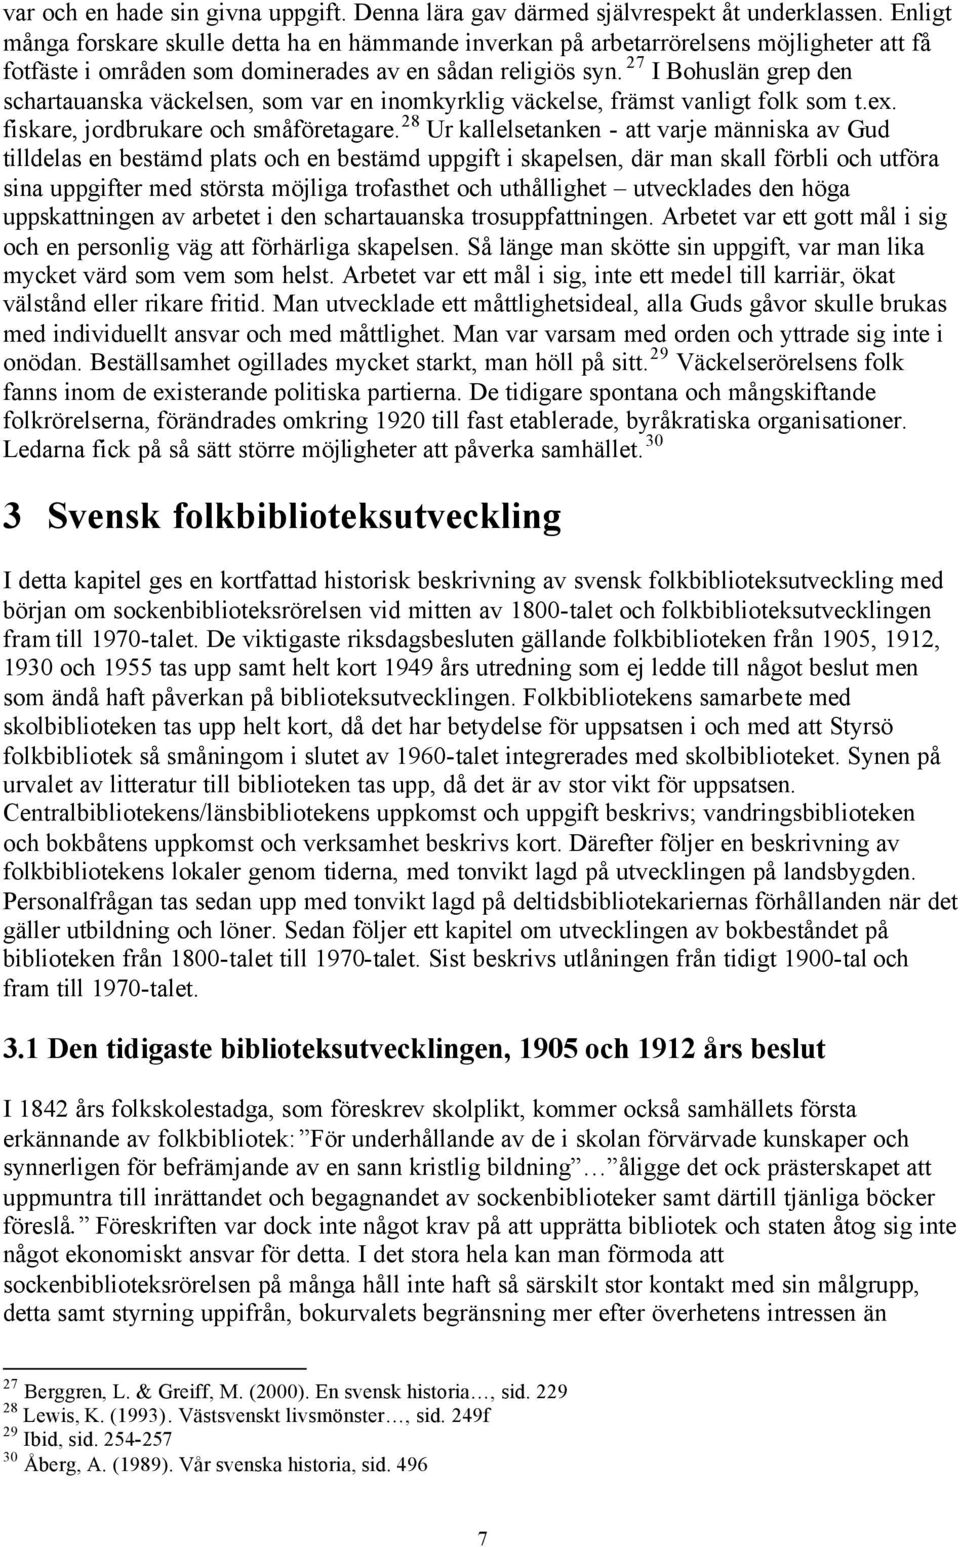 27 I Bohuslän grep den schartauanska väckelsen, som var en inomkyrklig väckelse, främst vanligt folk som t.ex. fiskare, jordbrukare och småföretagare.